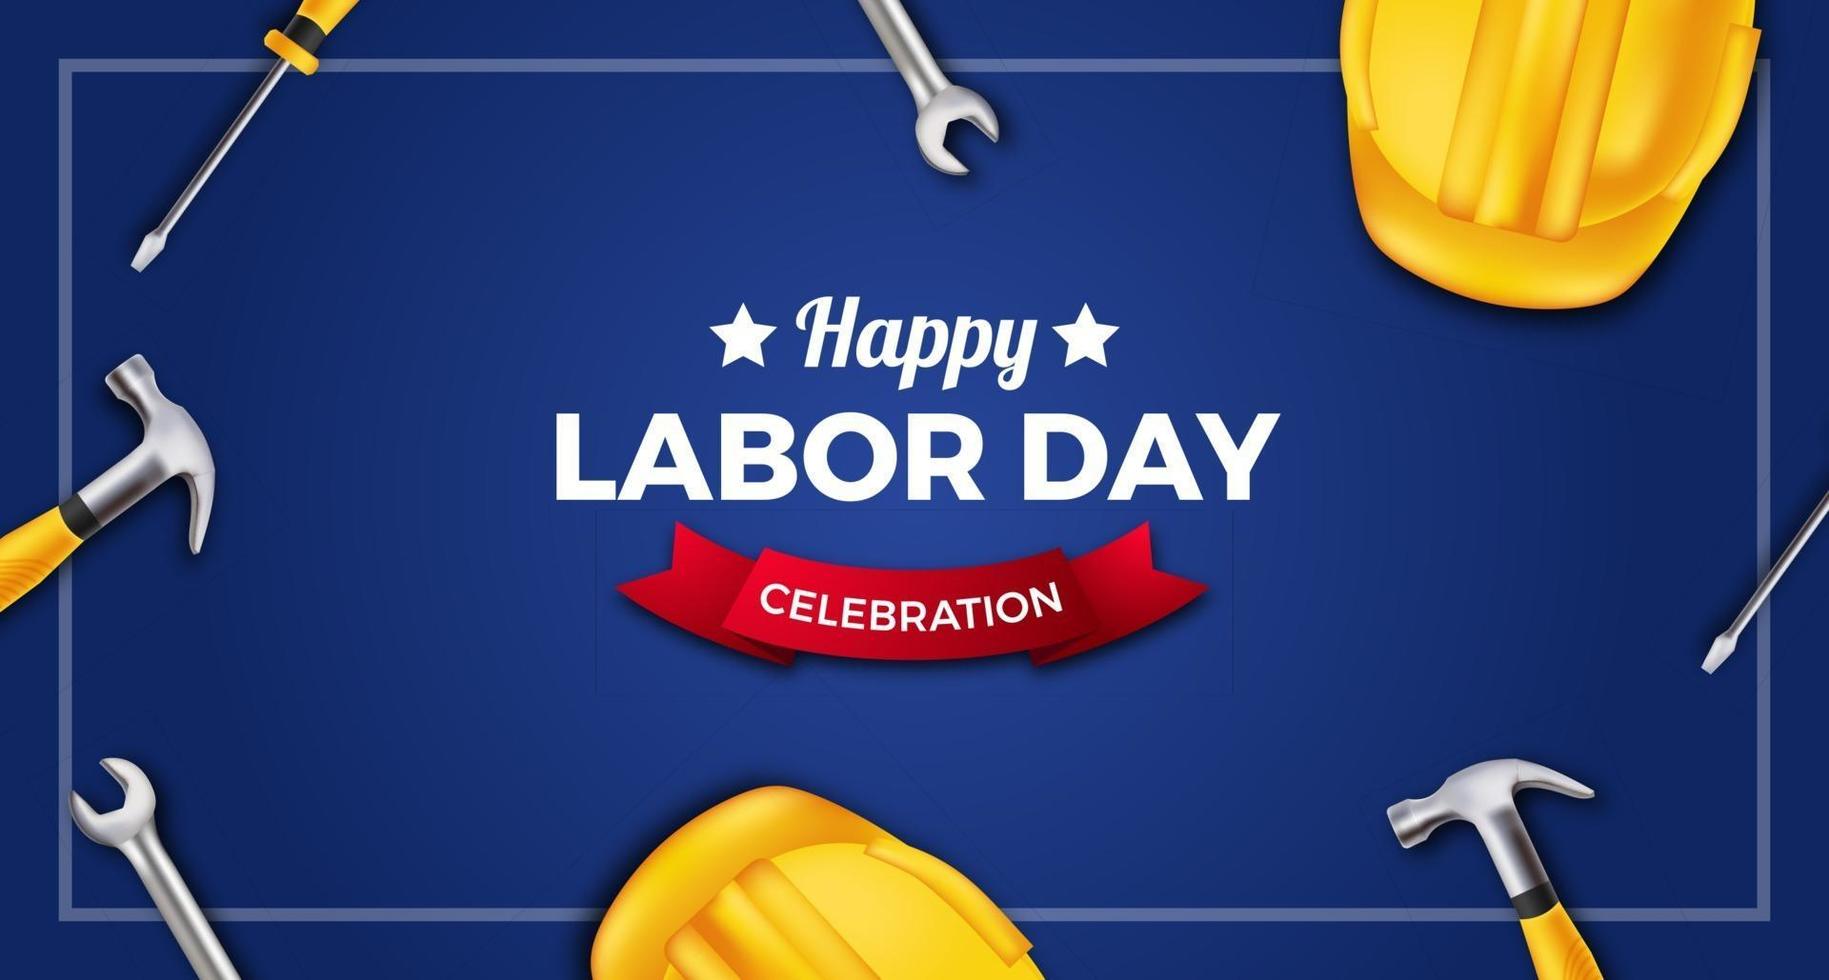 gelukkige dag van de arbeid viering poster banner met 3d gele veiligheidshelm, moersleutel, hamer, schroevendraaier op blauwe achtergrond vector